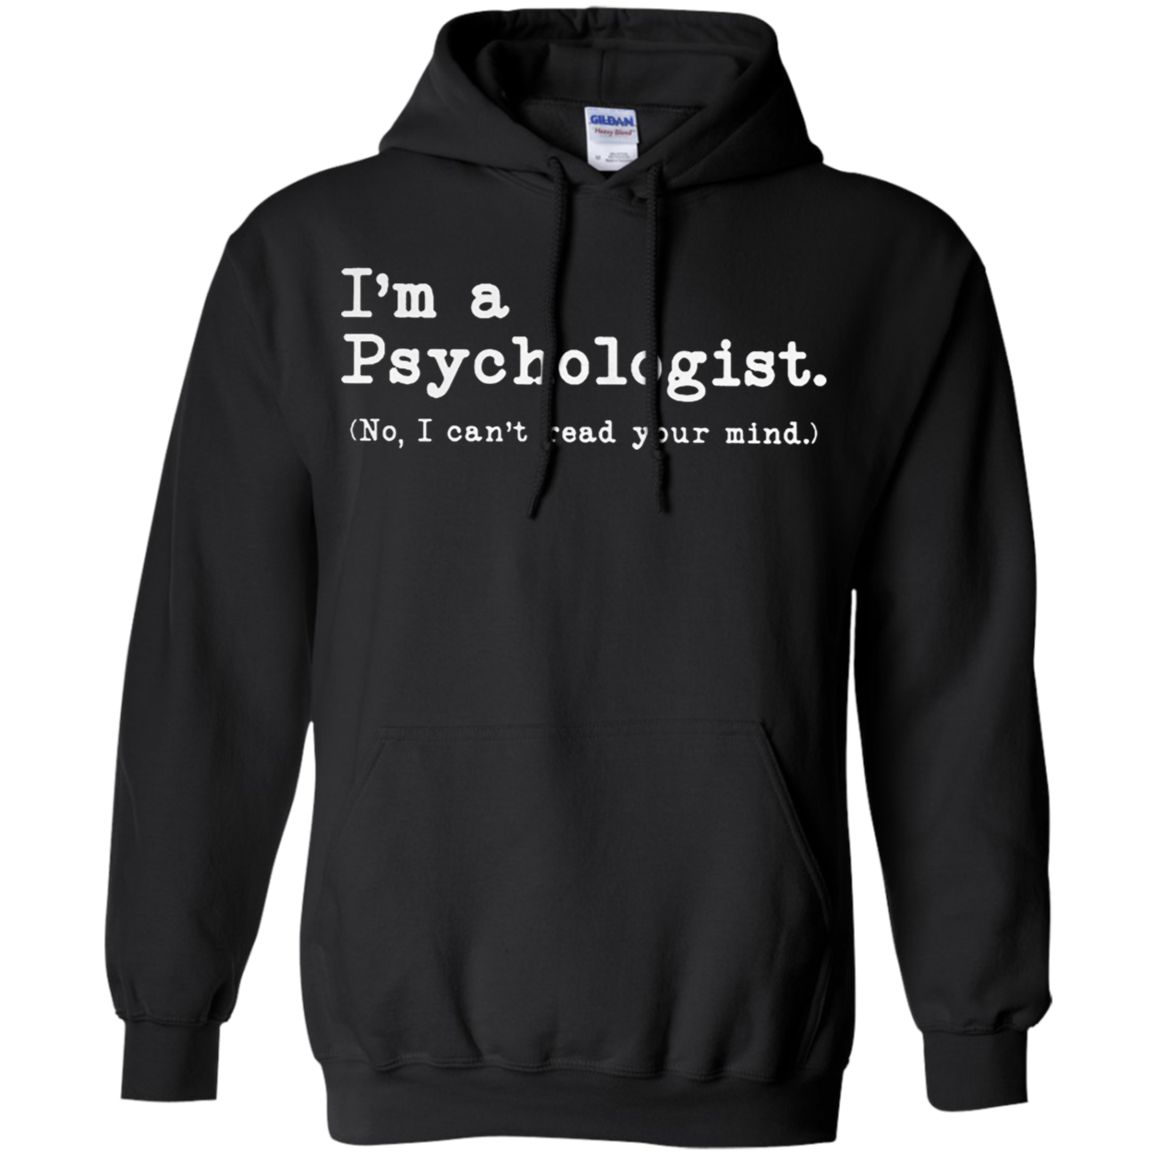 IÅ â”Ãˆm A Psychologist No I CanÅ â”Ãˆt Read Your Mind Shirts